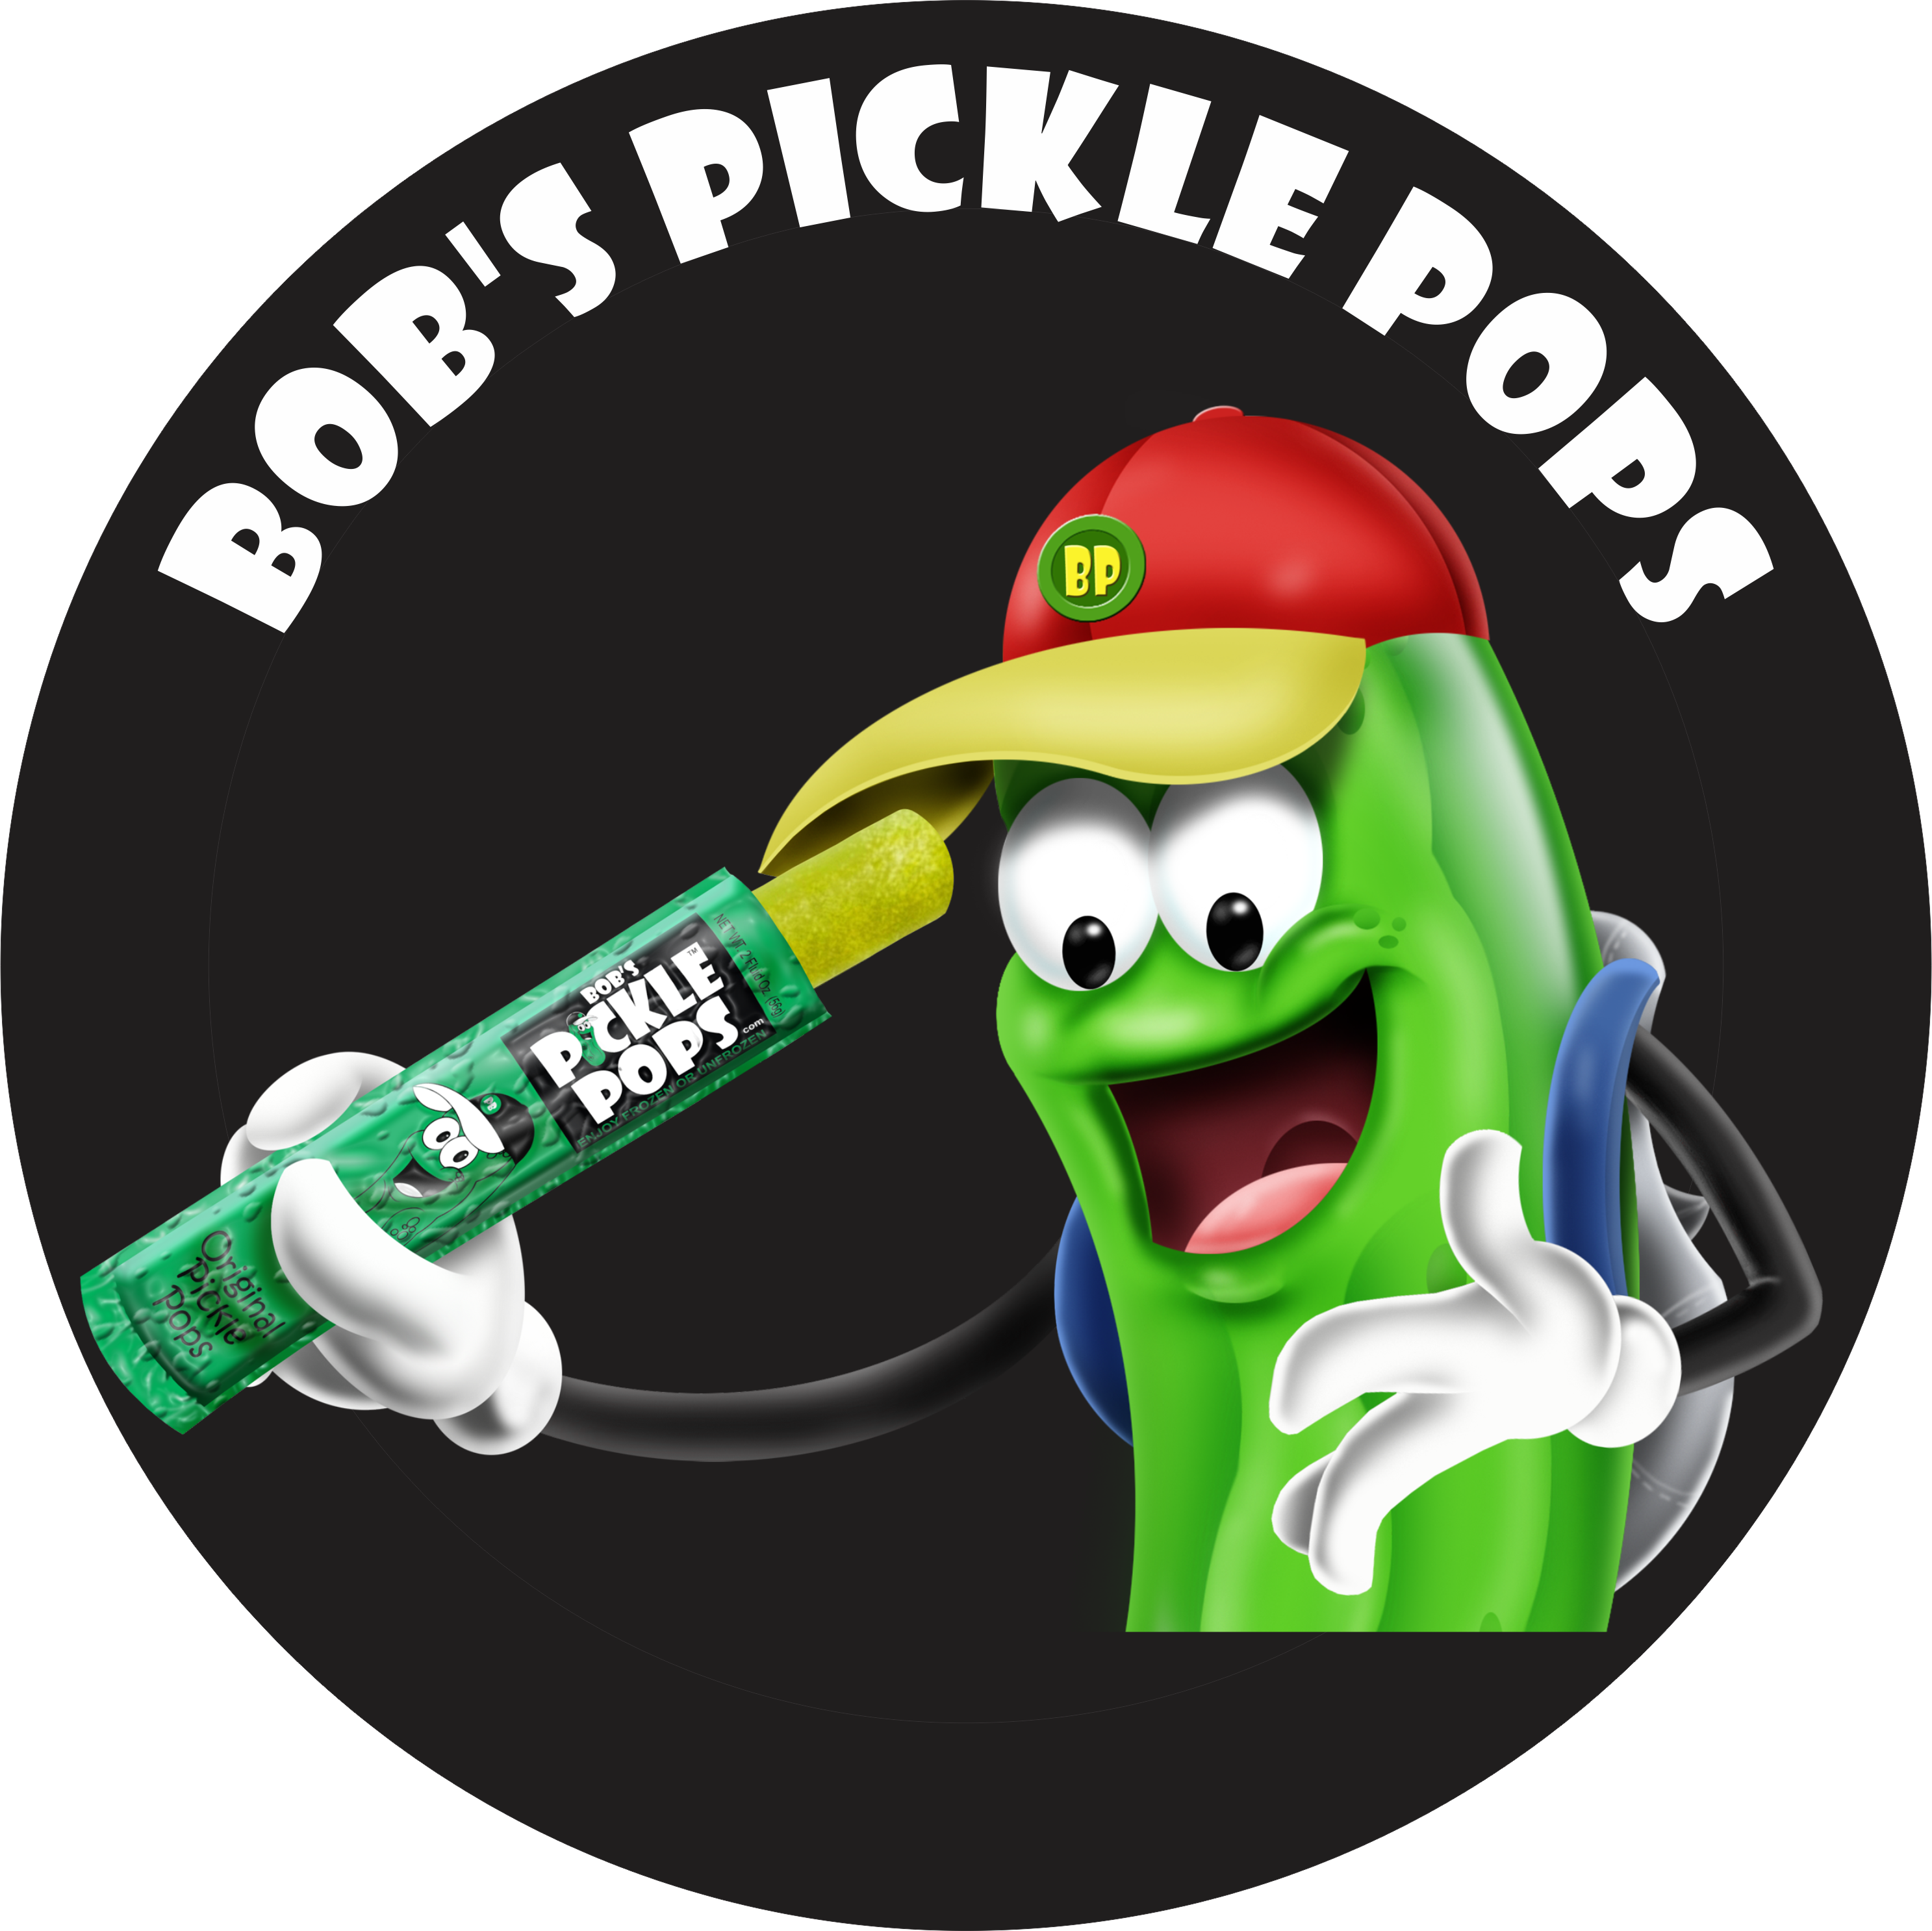 Bob's Pickle Pops (2974x2973)